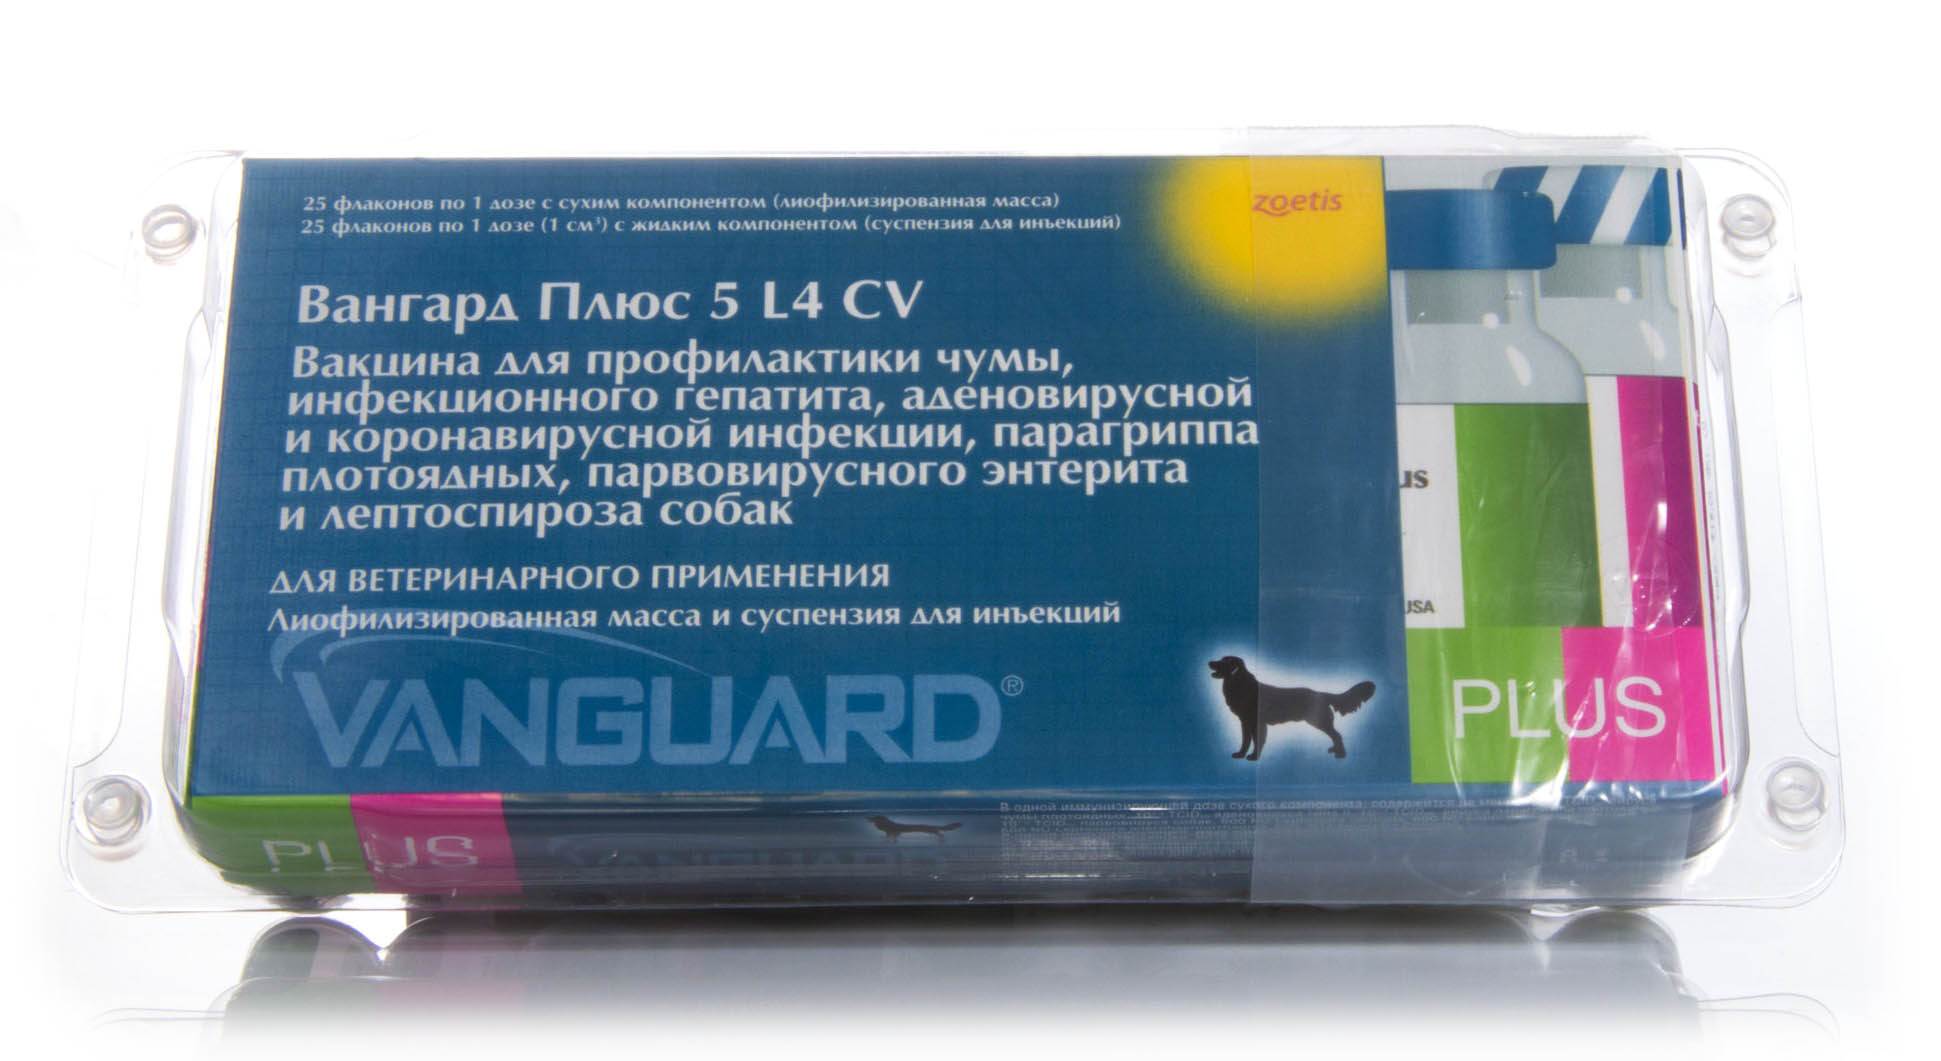 Вангард 5 (инструкция по применению для собак). зачем собакам делать прививку вангард 5 плюс cv?